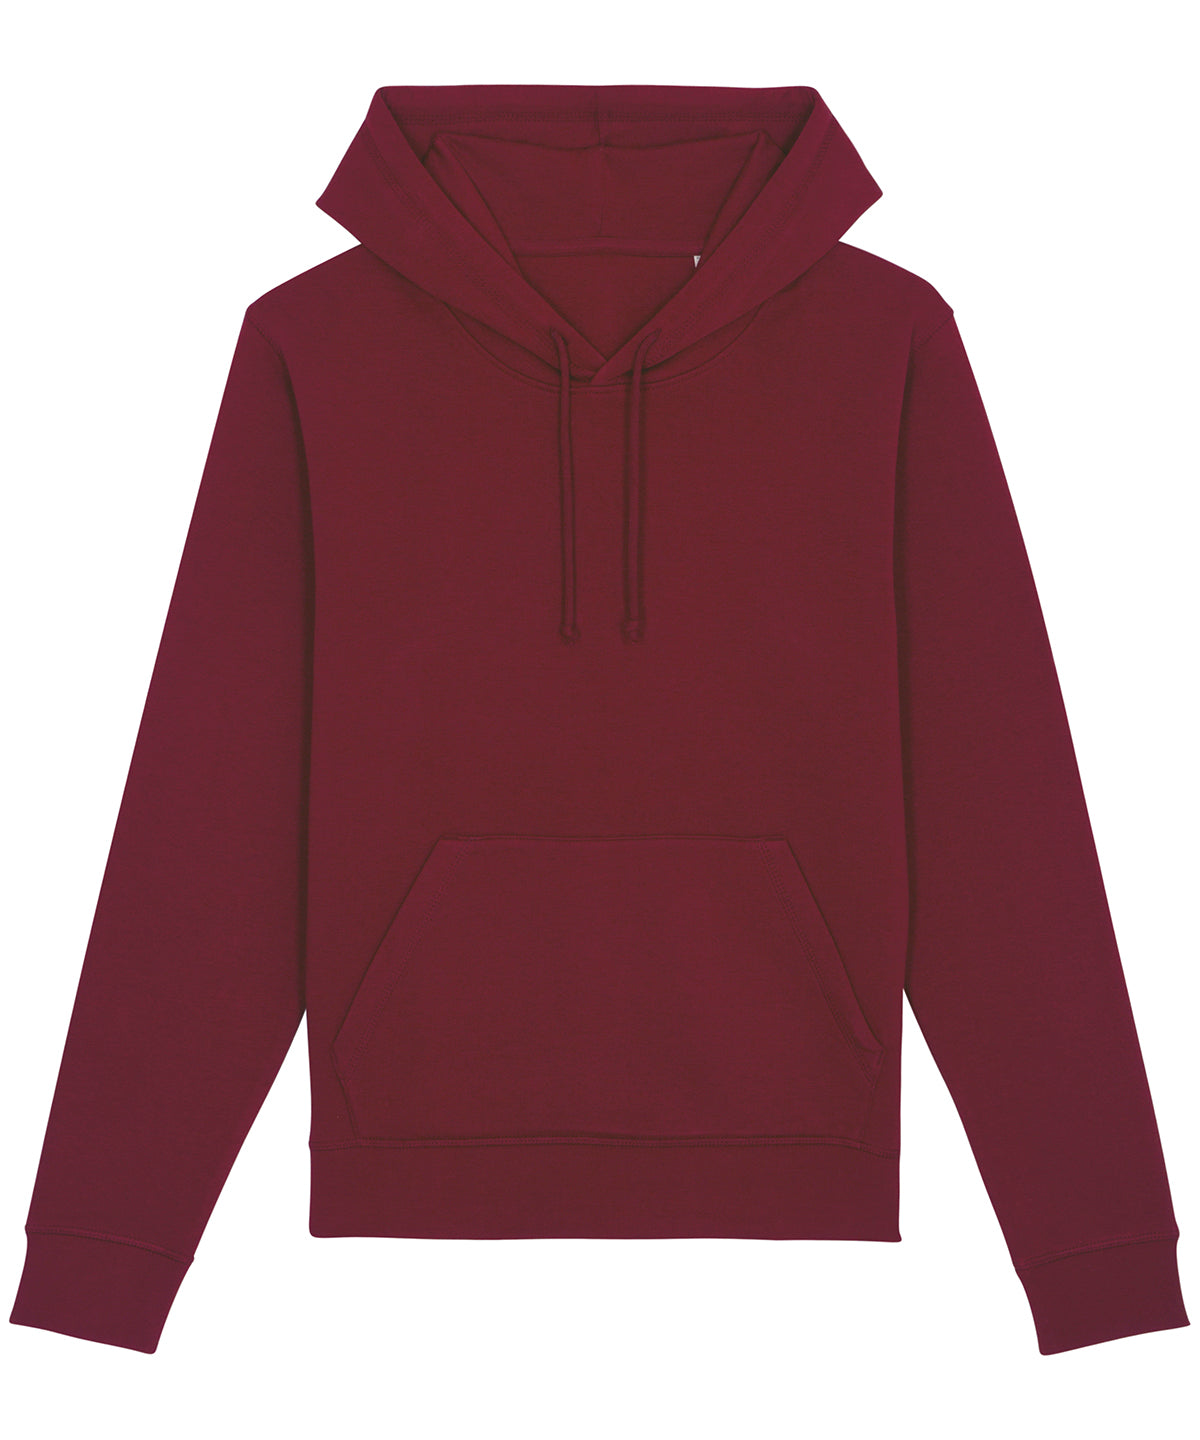 burgundy hoodie mens